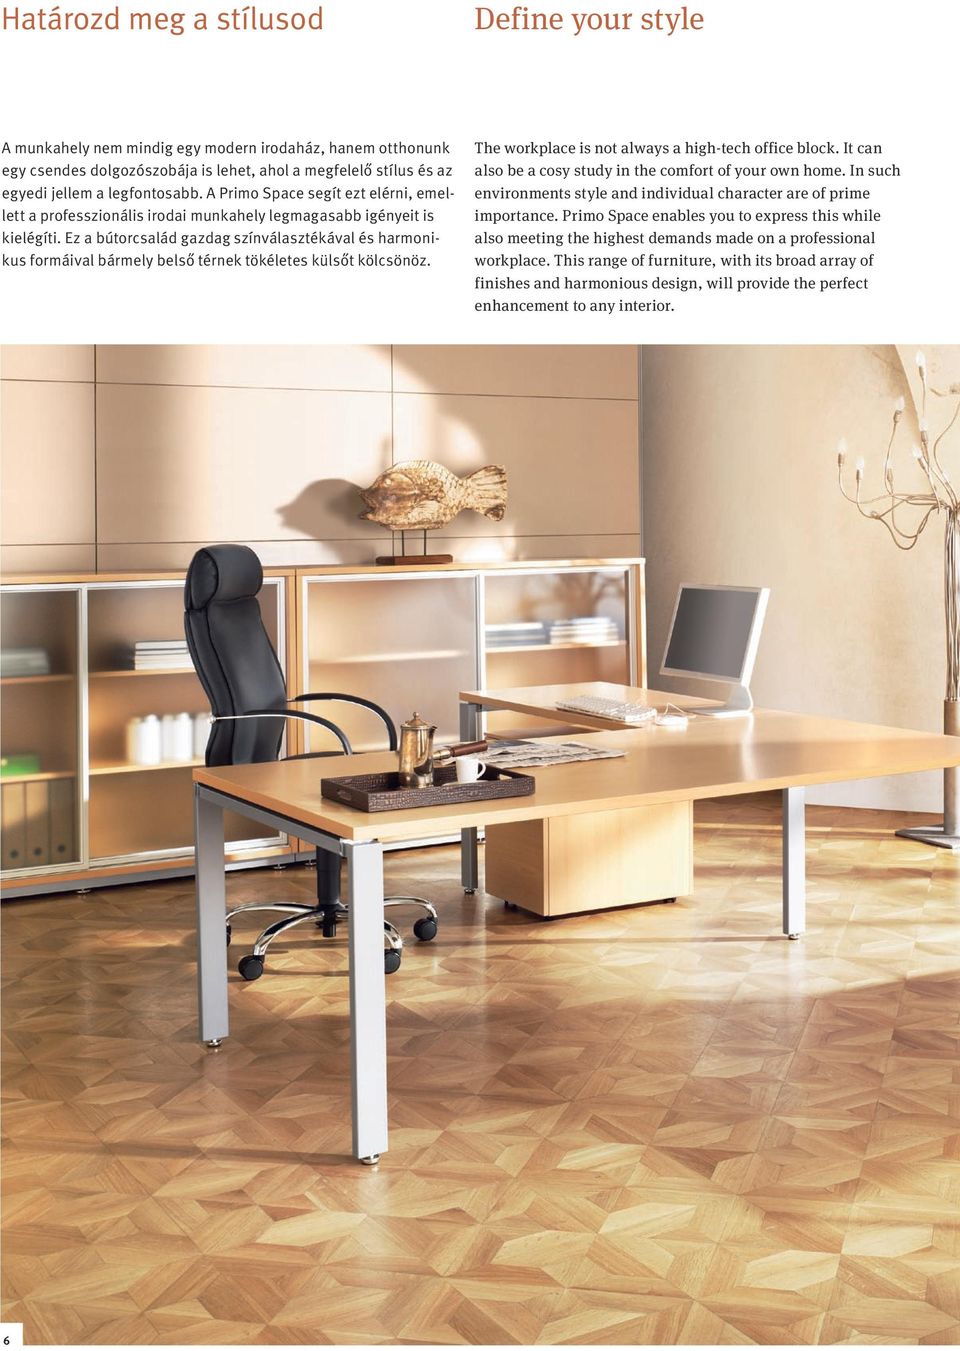 Ez a bútorcsalád gazdag színválasztékával és harmonikus formáival bármely belső térnek tökéletes külsőt kölcsönöz. The workplace is not always a high-tech office block.